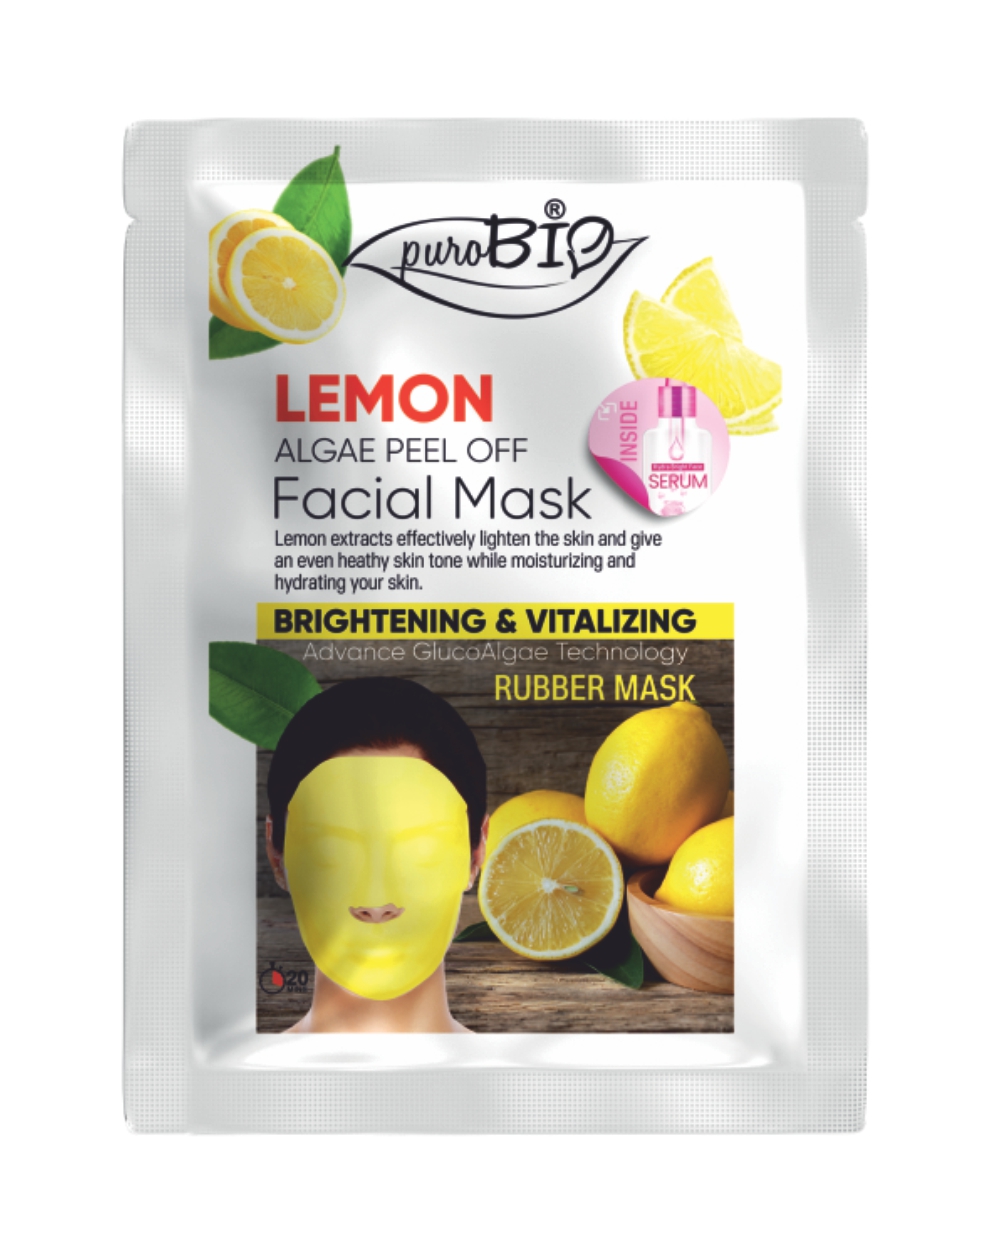 Lemon face mask